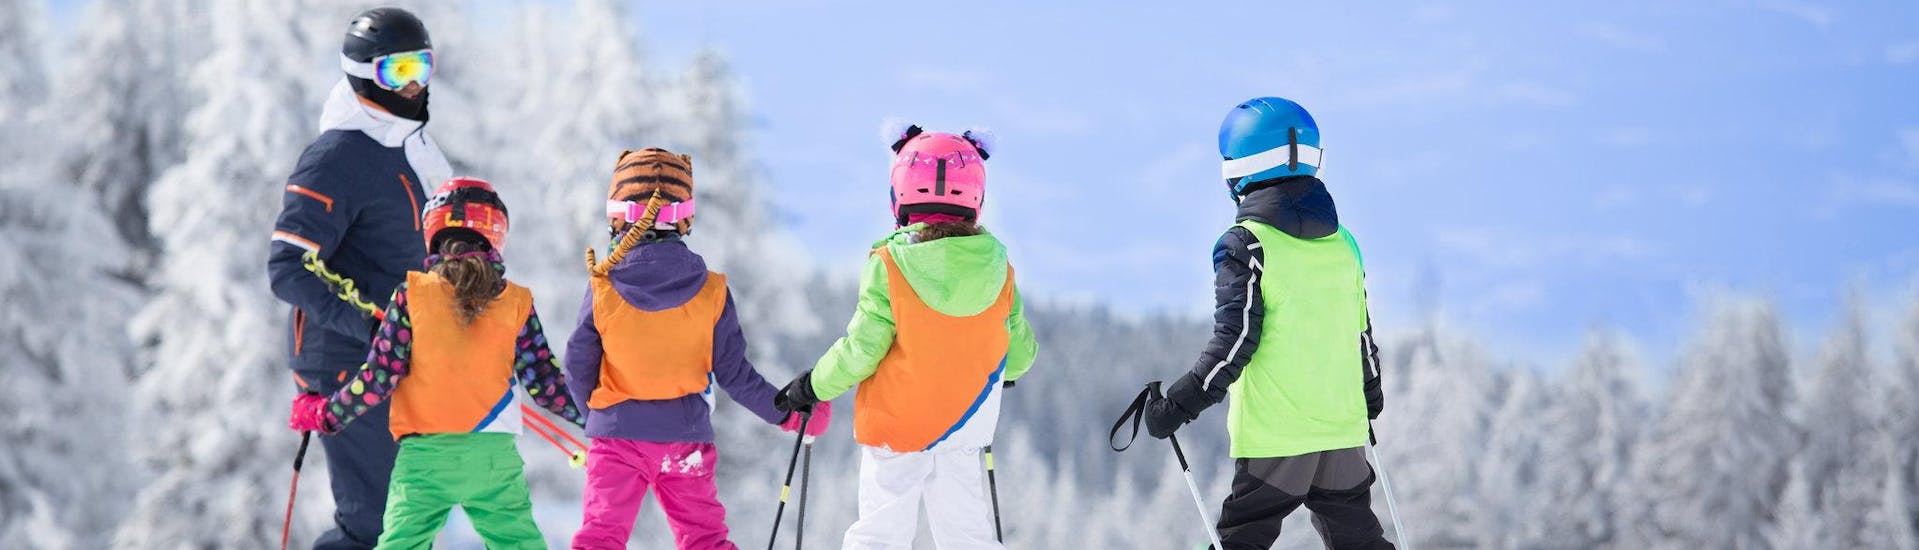 Drie skiërs bereiden zich voor op een skiles met een Engelstalige skileraar in het skigebied van Ertsgebergte.